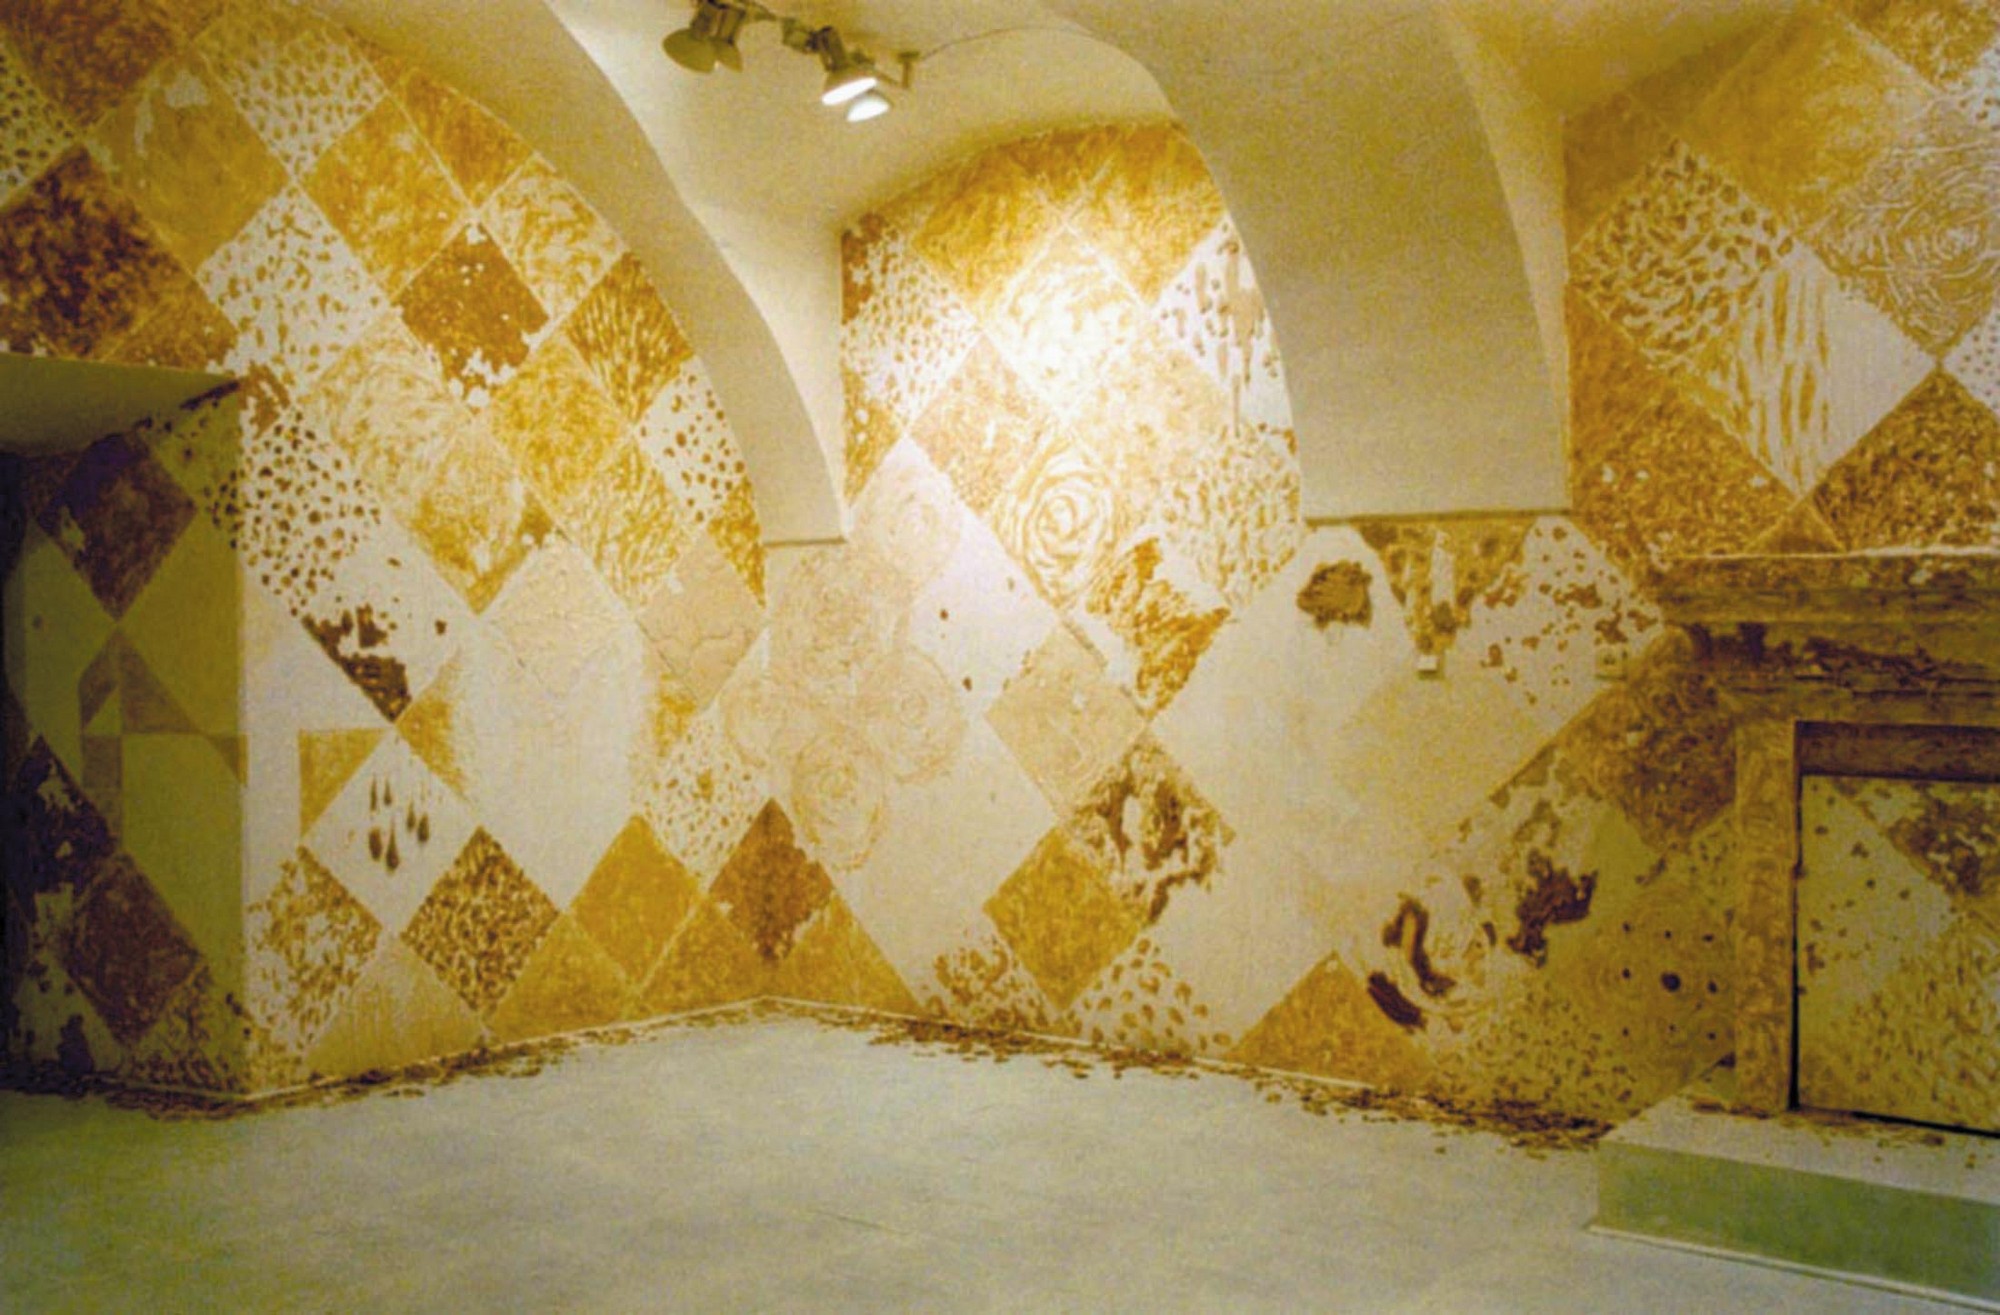 Jan Gryka, „Typ 650”, instalacja: mąka, woda, sól, jajko, Galeria Biała, Lublin 2001. Fot. Jan Gryka (źródło: materiały prasowe kwartalnika „Akcent”)